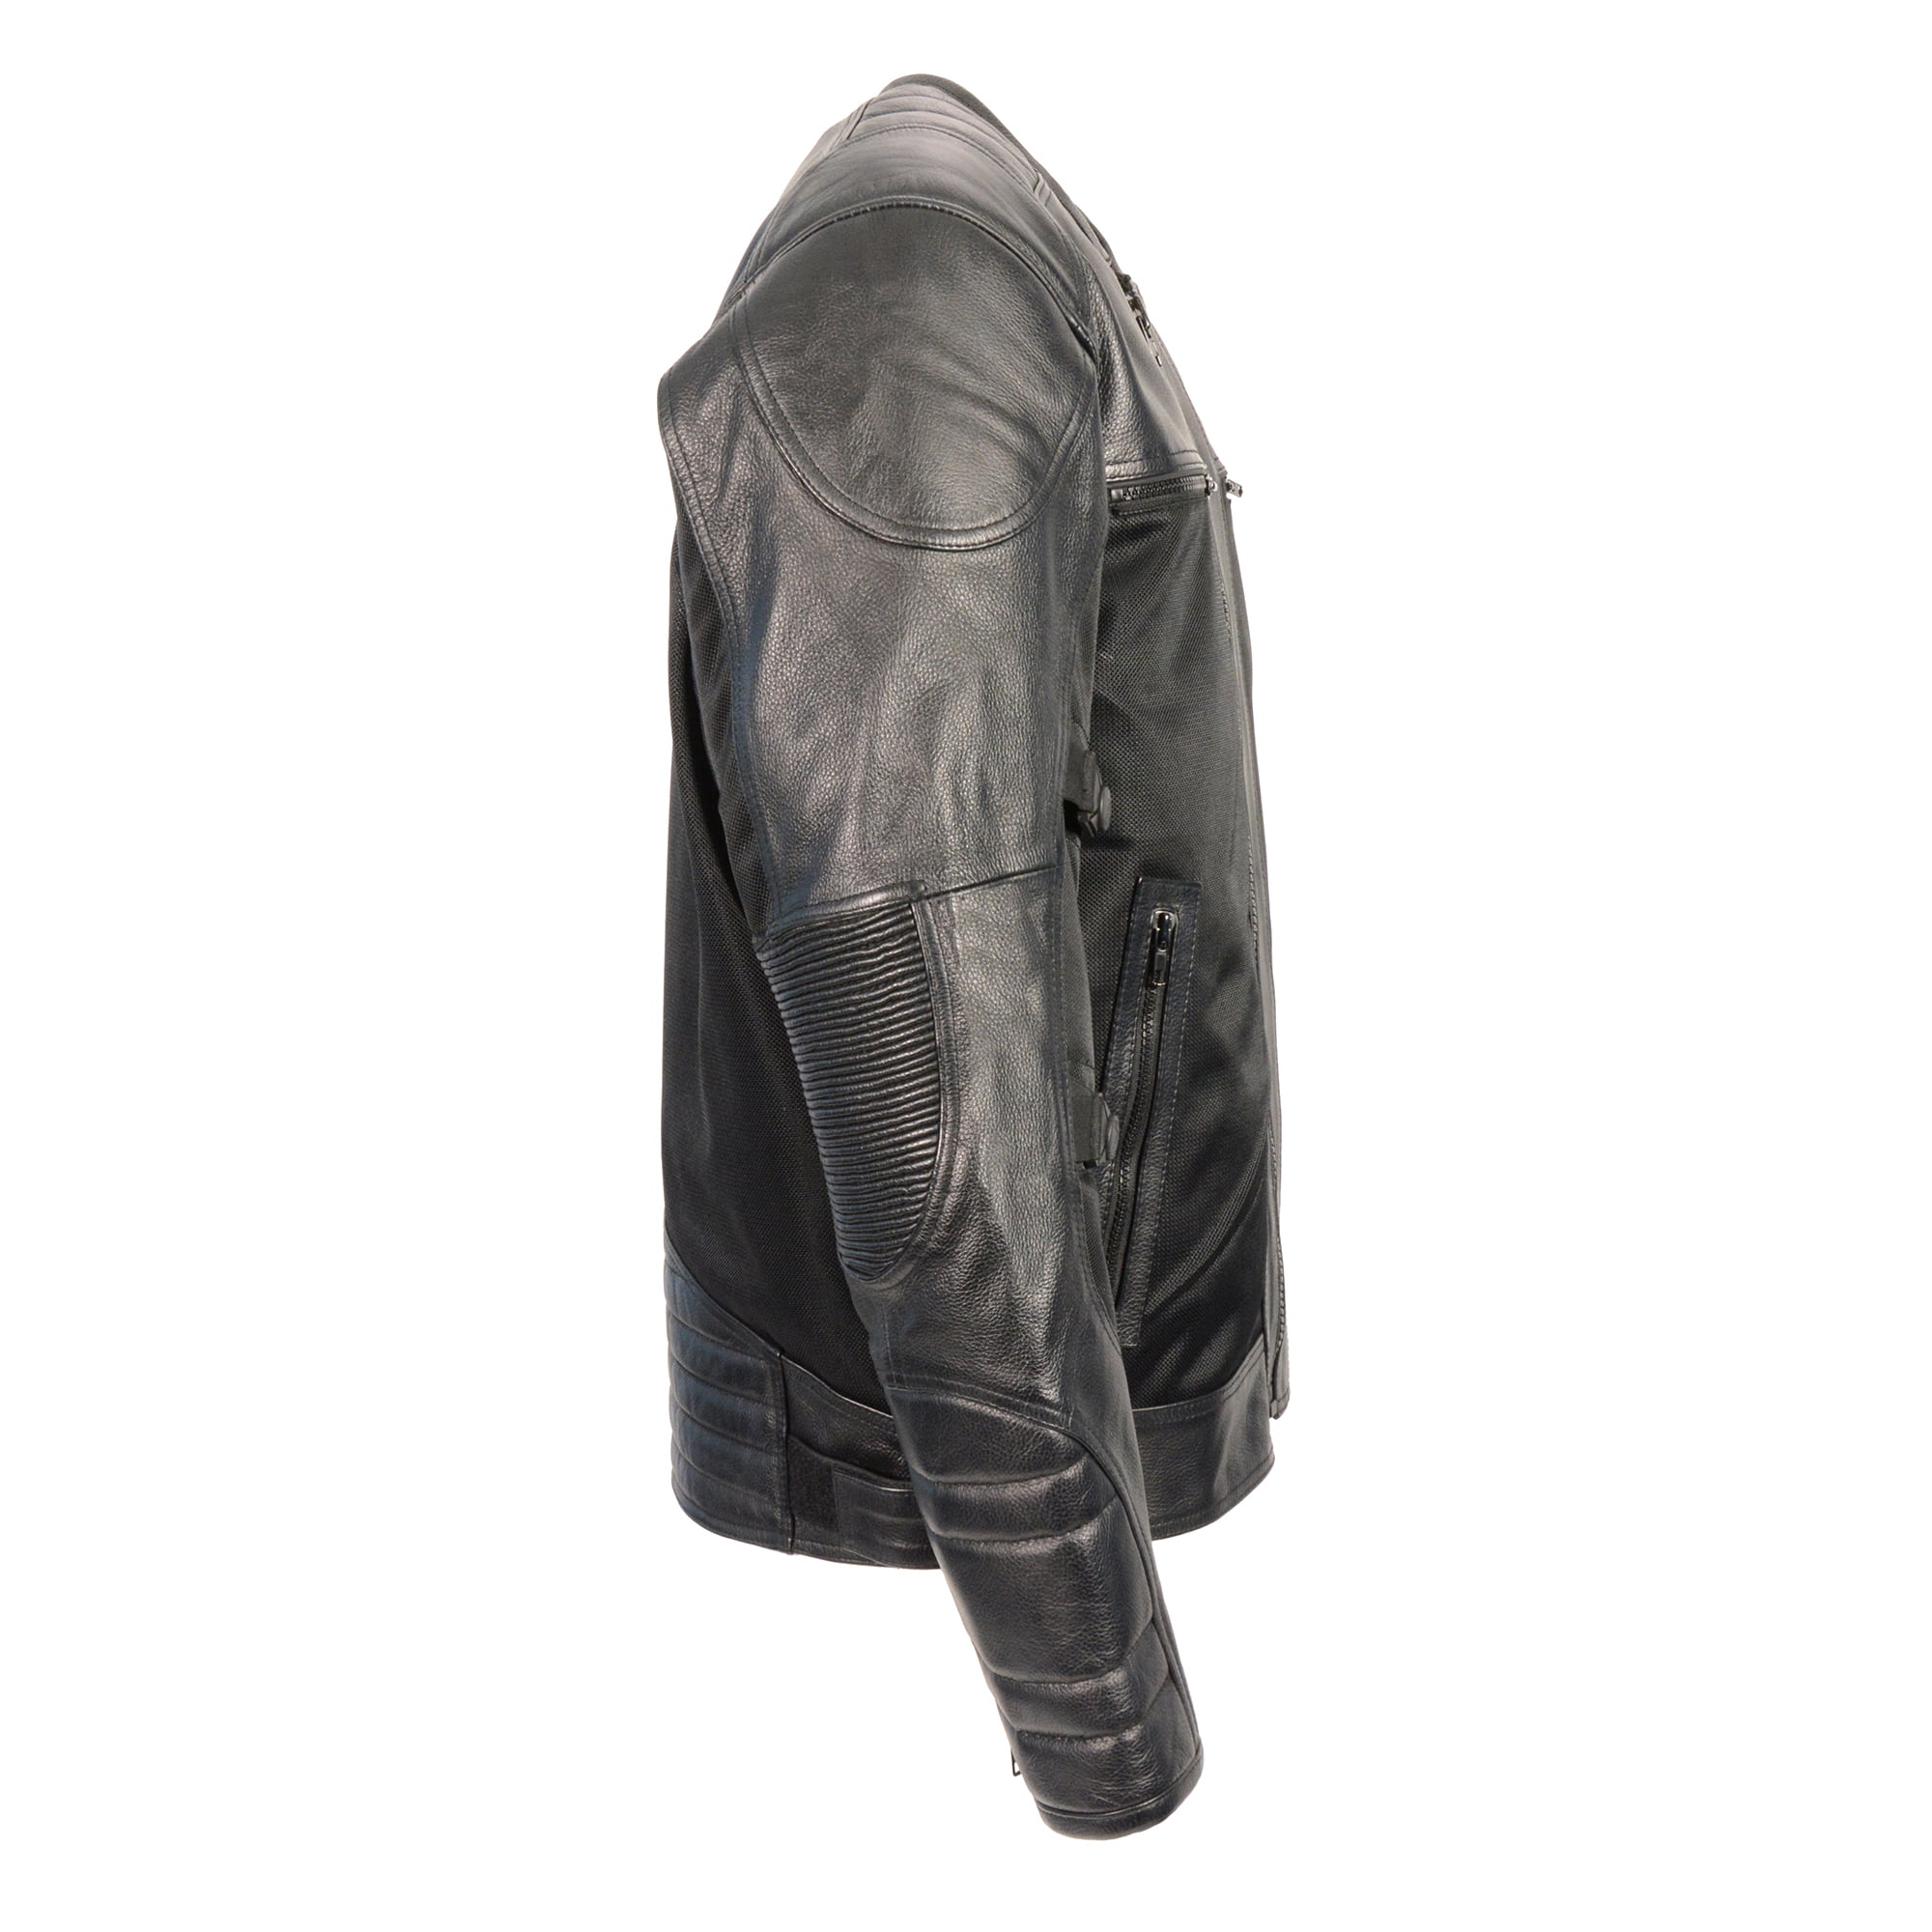 Mens Leather & Mesh Racer Jacket w/Removable Rain Jacket Liner Black 